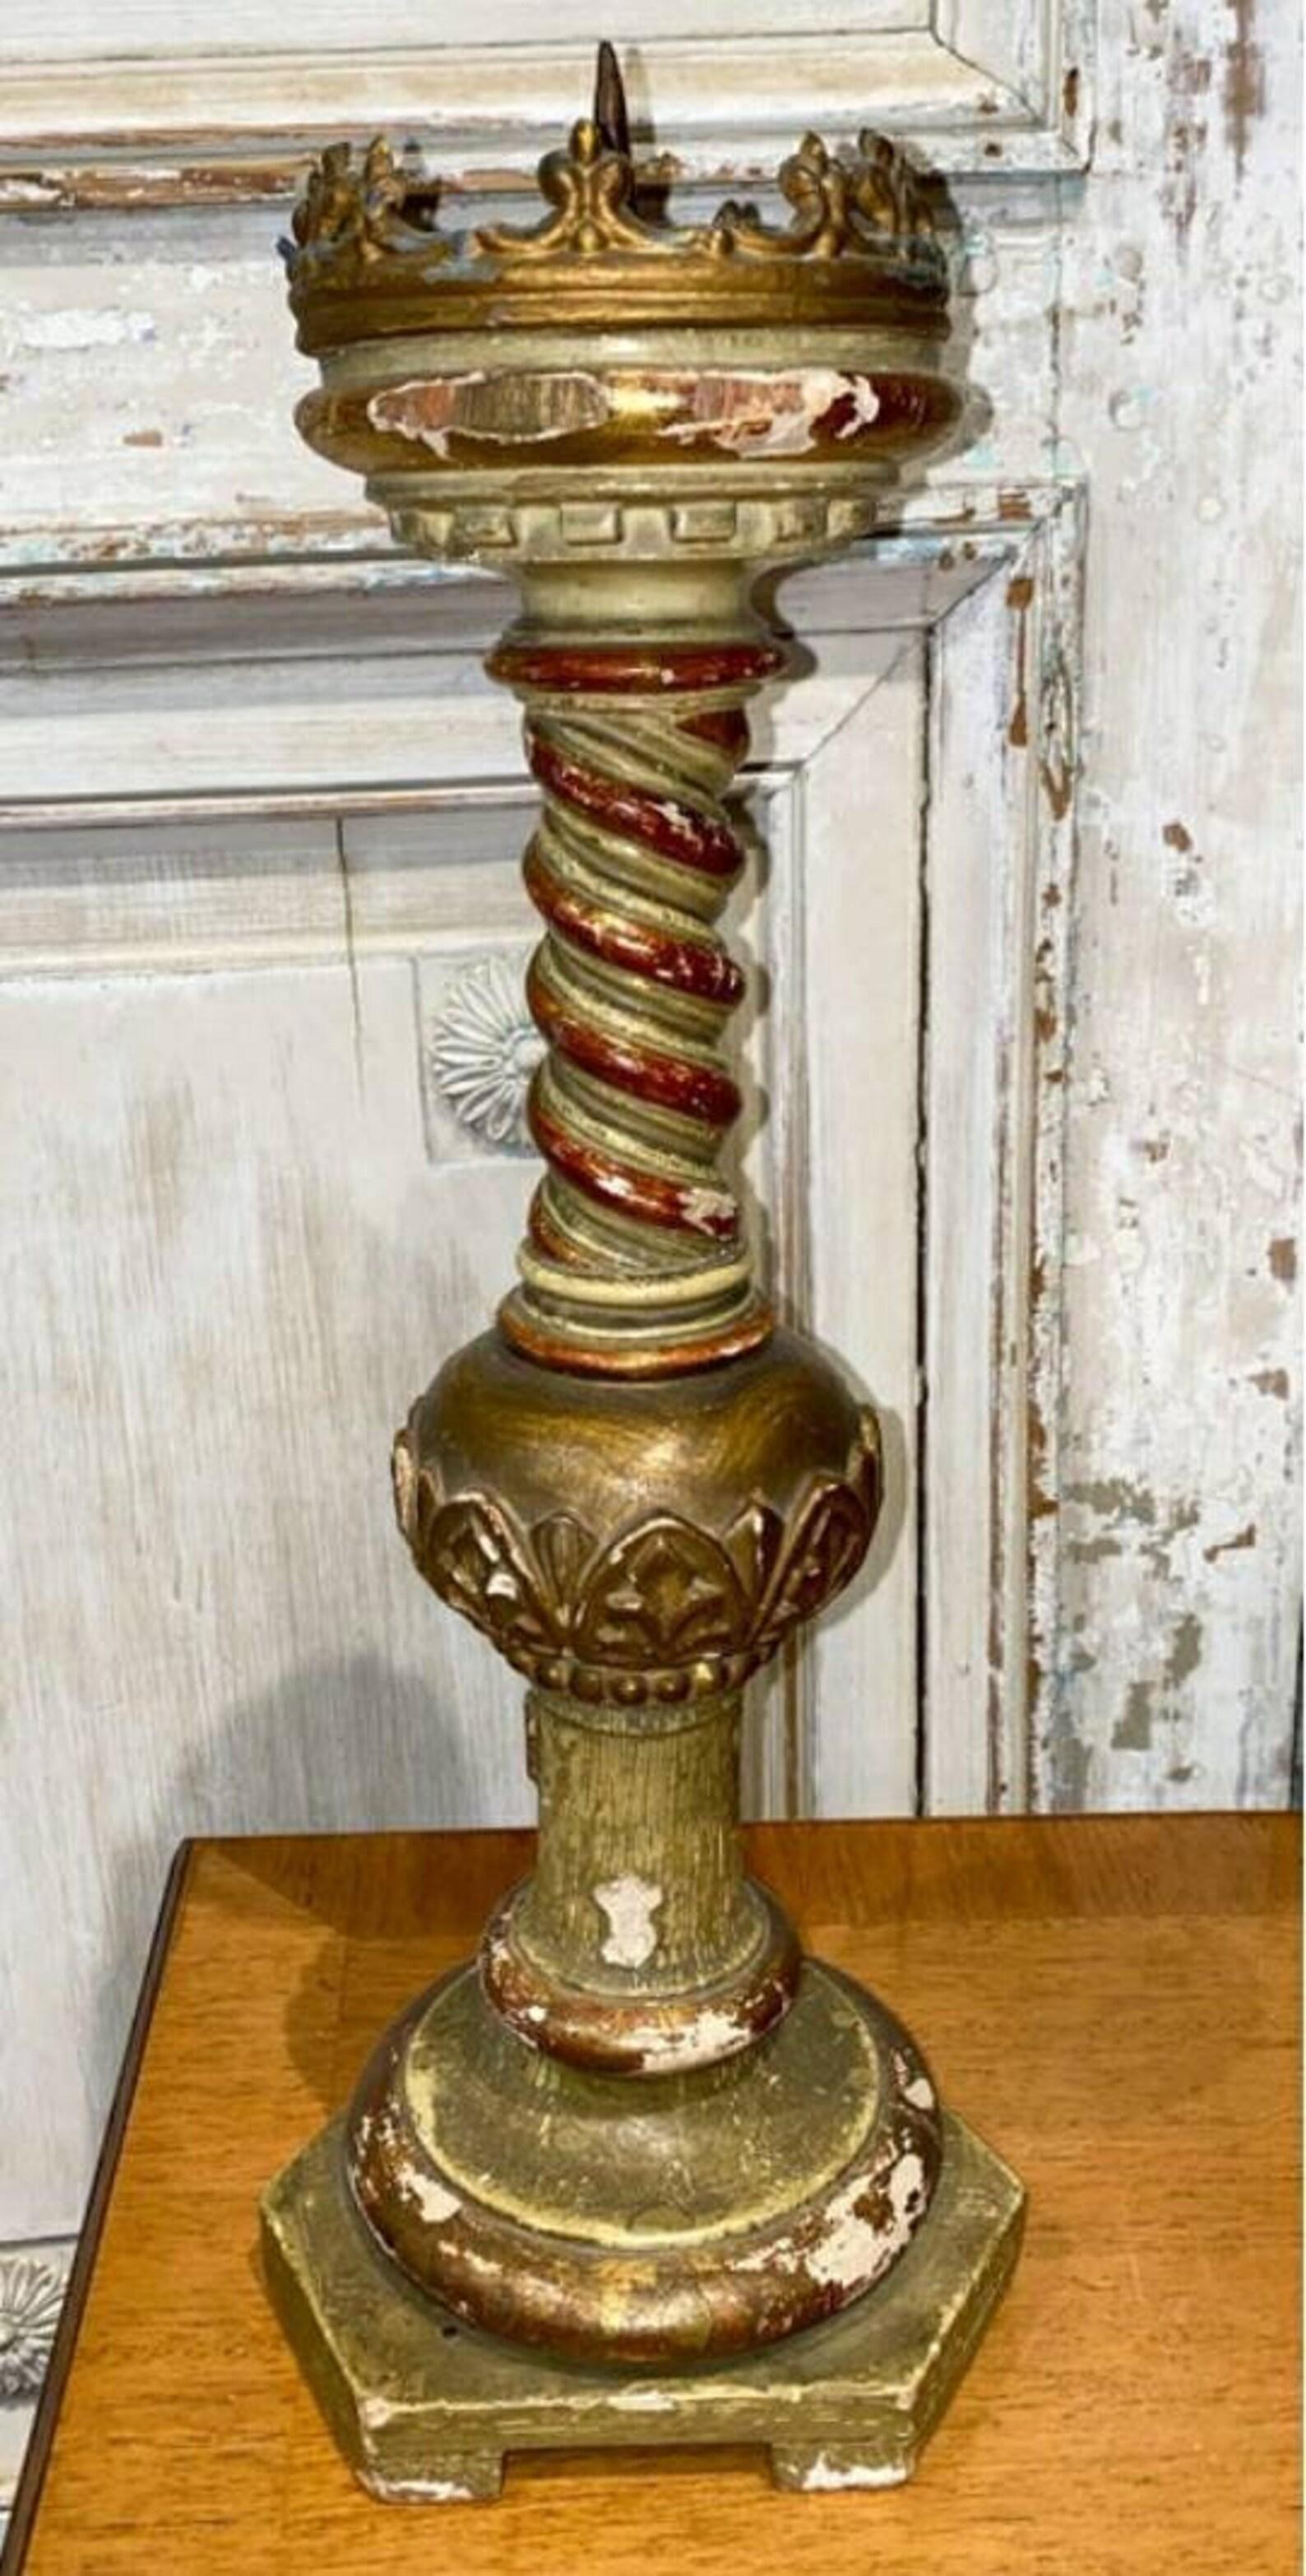 Rare bâton d'autel d'église italien sculpté à la main, polychromé et doré.  Né en Italie dans la seconde moitié du XIXe siècle, il présente un plateau sculptural en métal doré en forme de couronne entourant un haut pique-bougie, au-dessus d'une